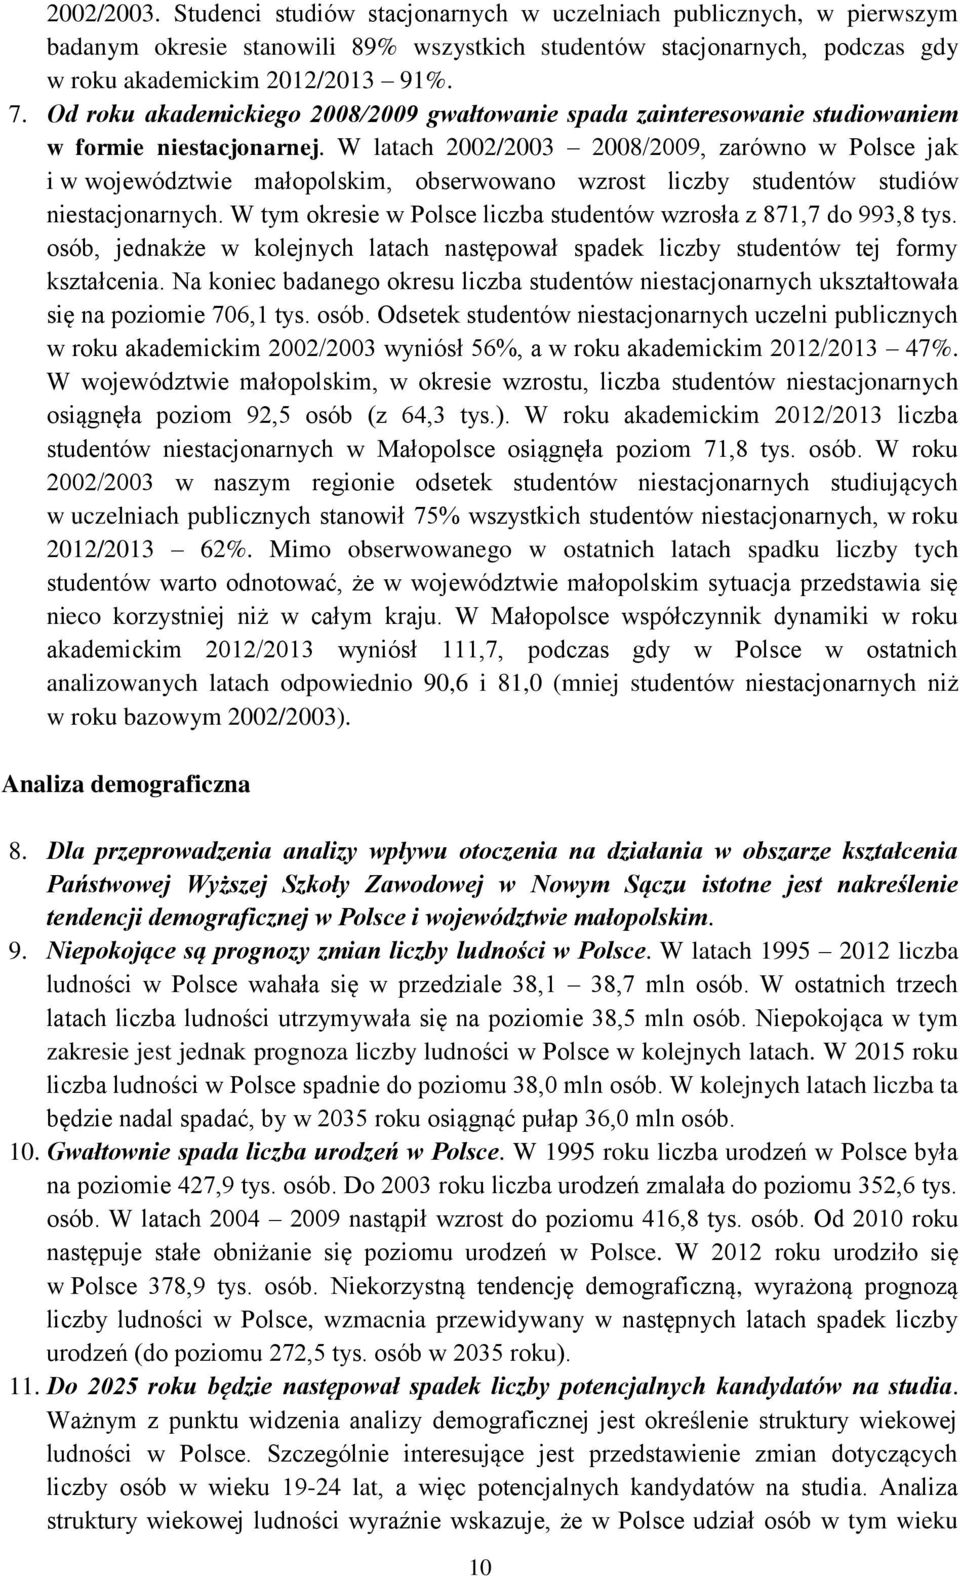 W latach 2002/2003 2008/2009, zarówno w Polsce jak i w województwie małopolskim, obserwowano wzrost liczby studentów studiów niestacjonarnych.